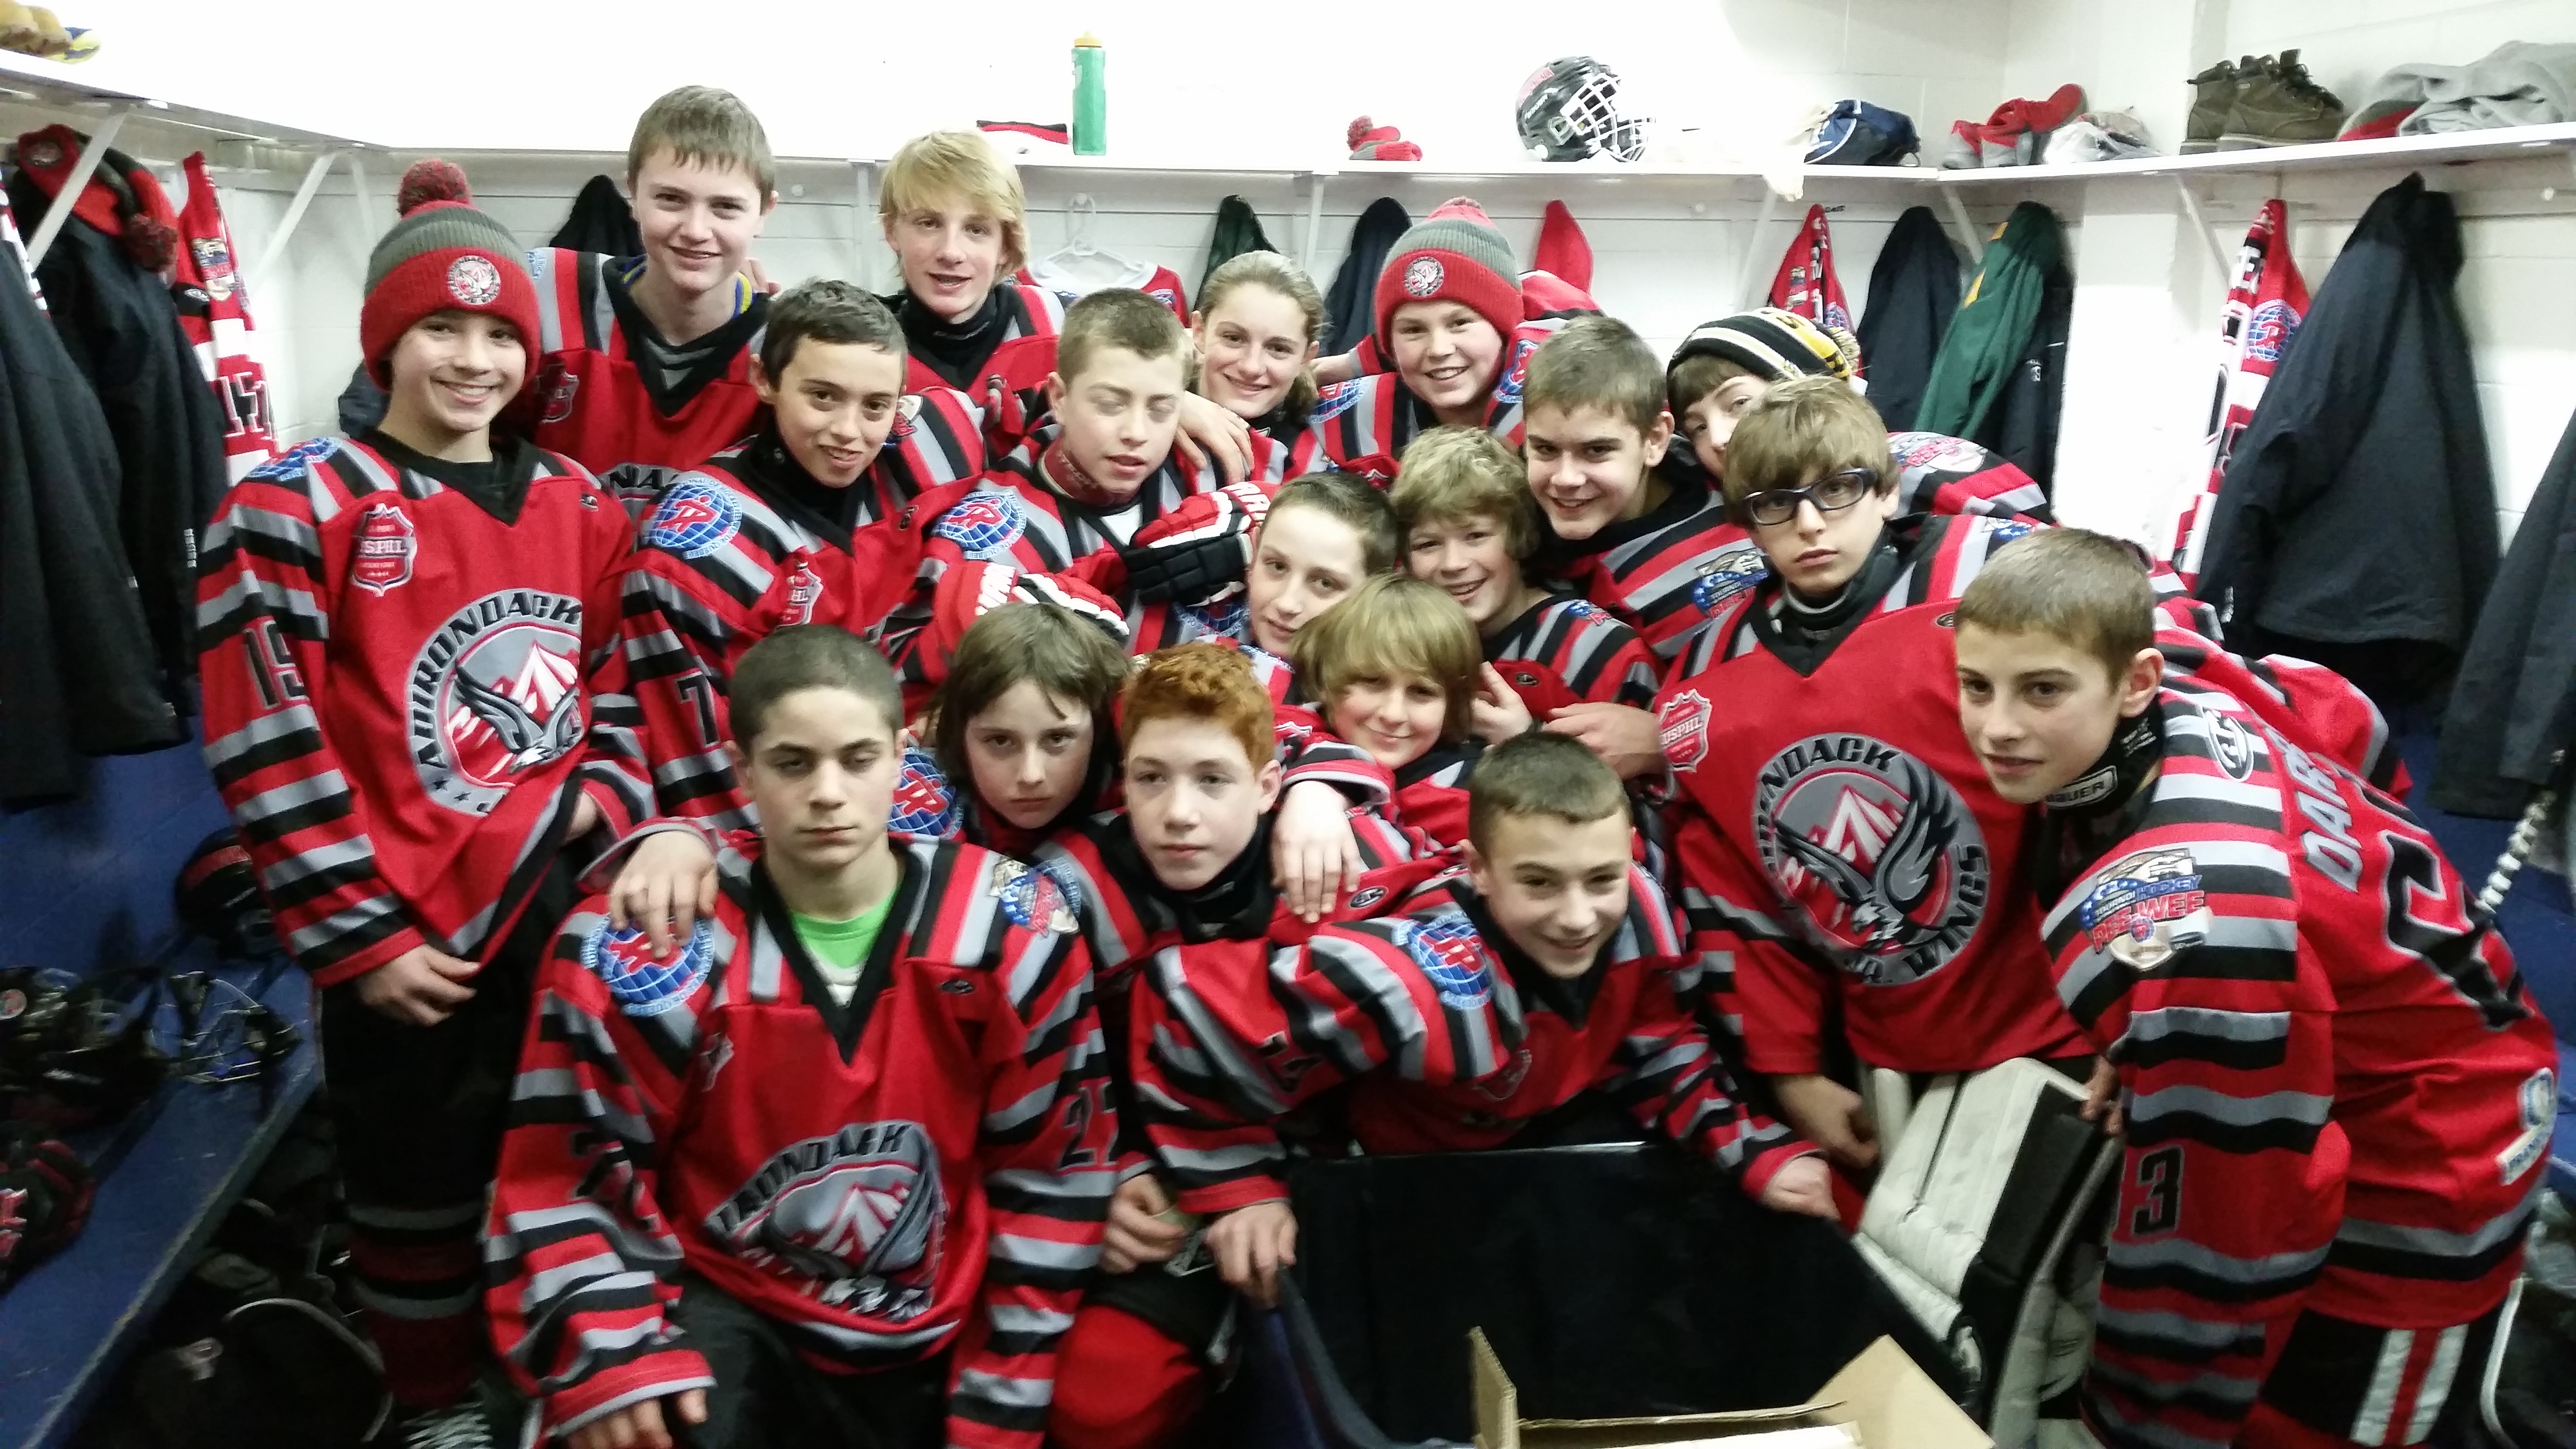 hockey-hut team huddle